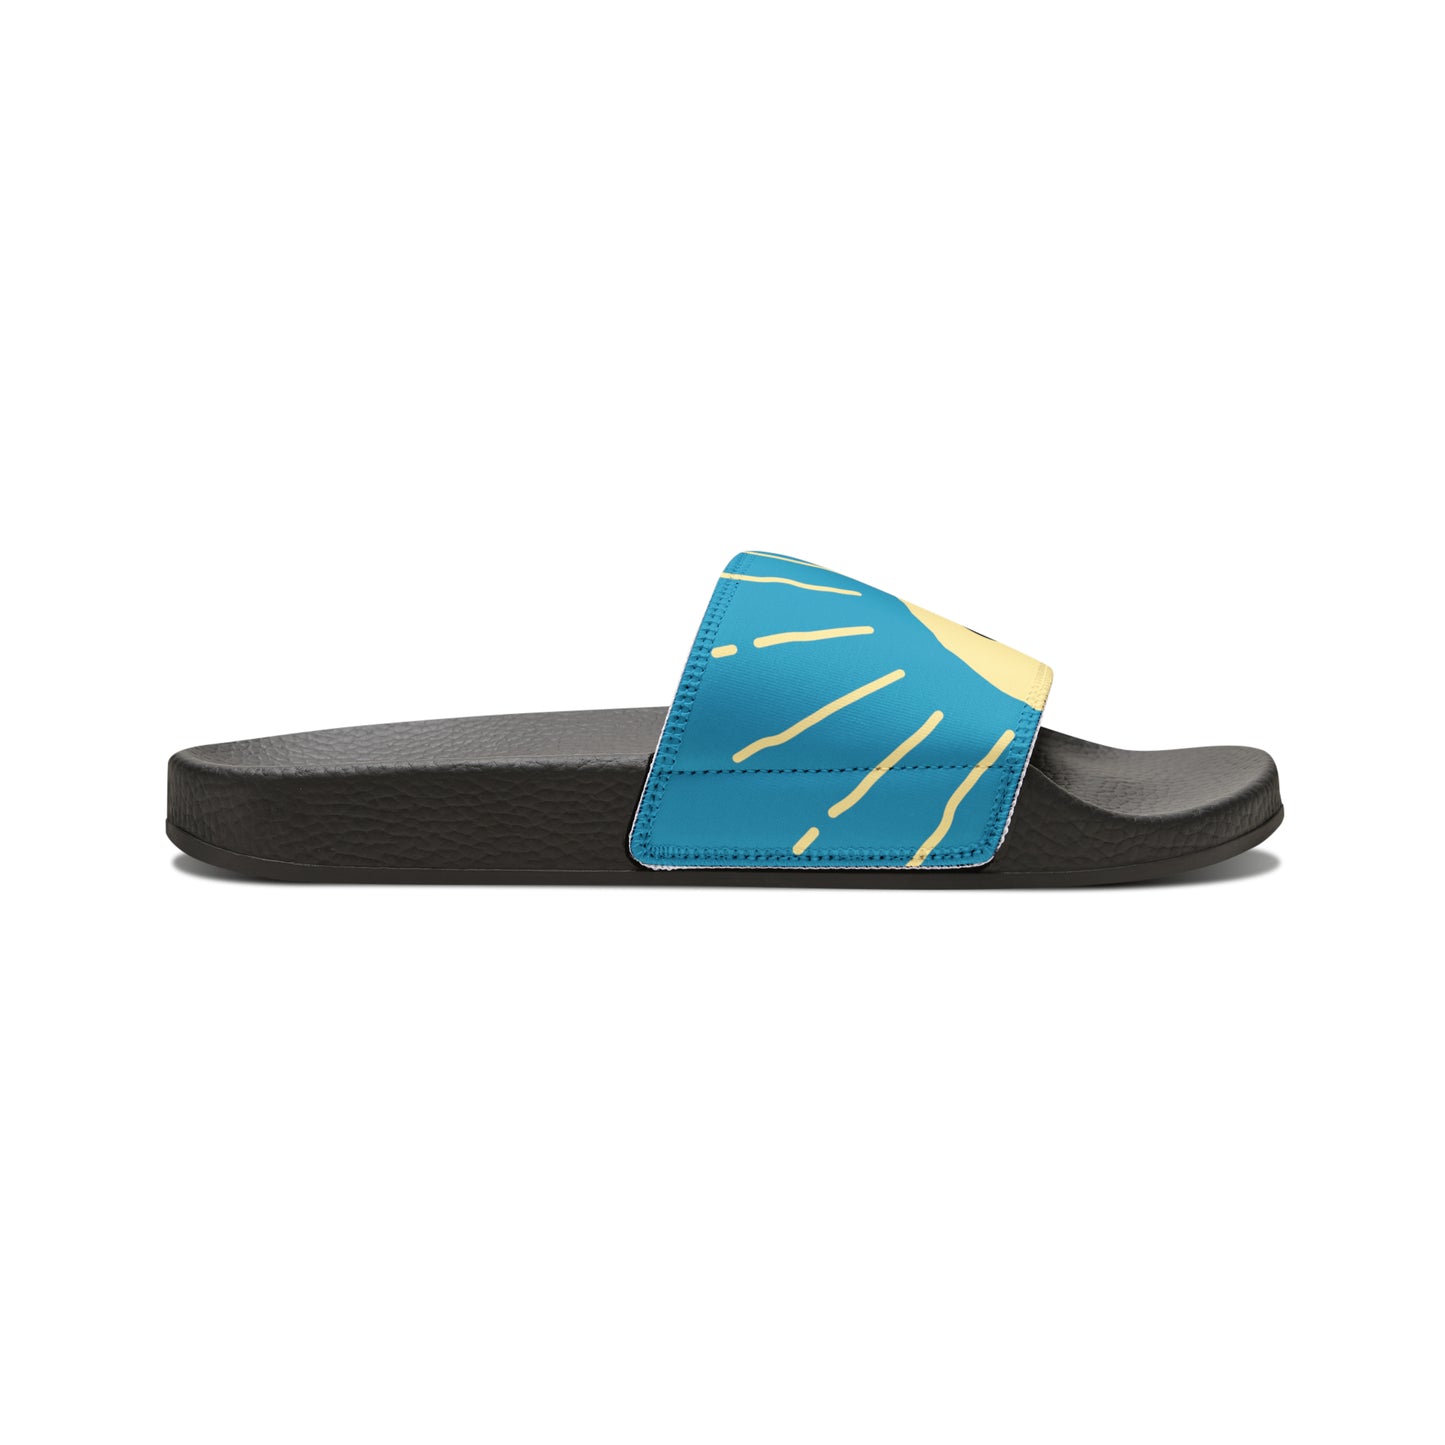 Slide Sandals [Black\Teal]